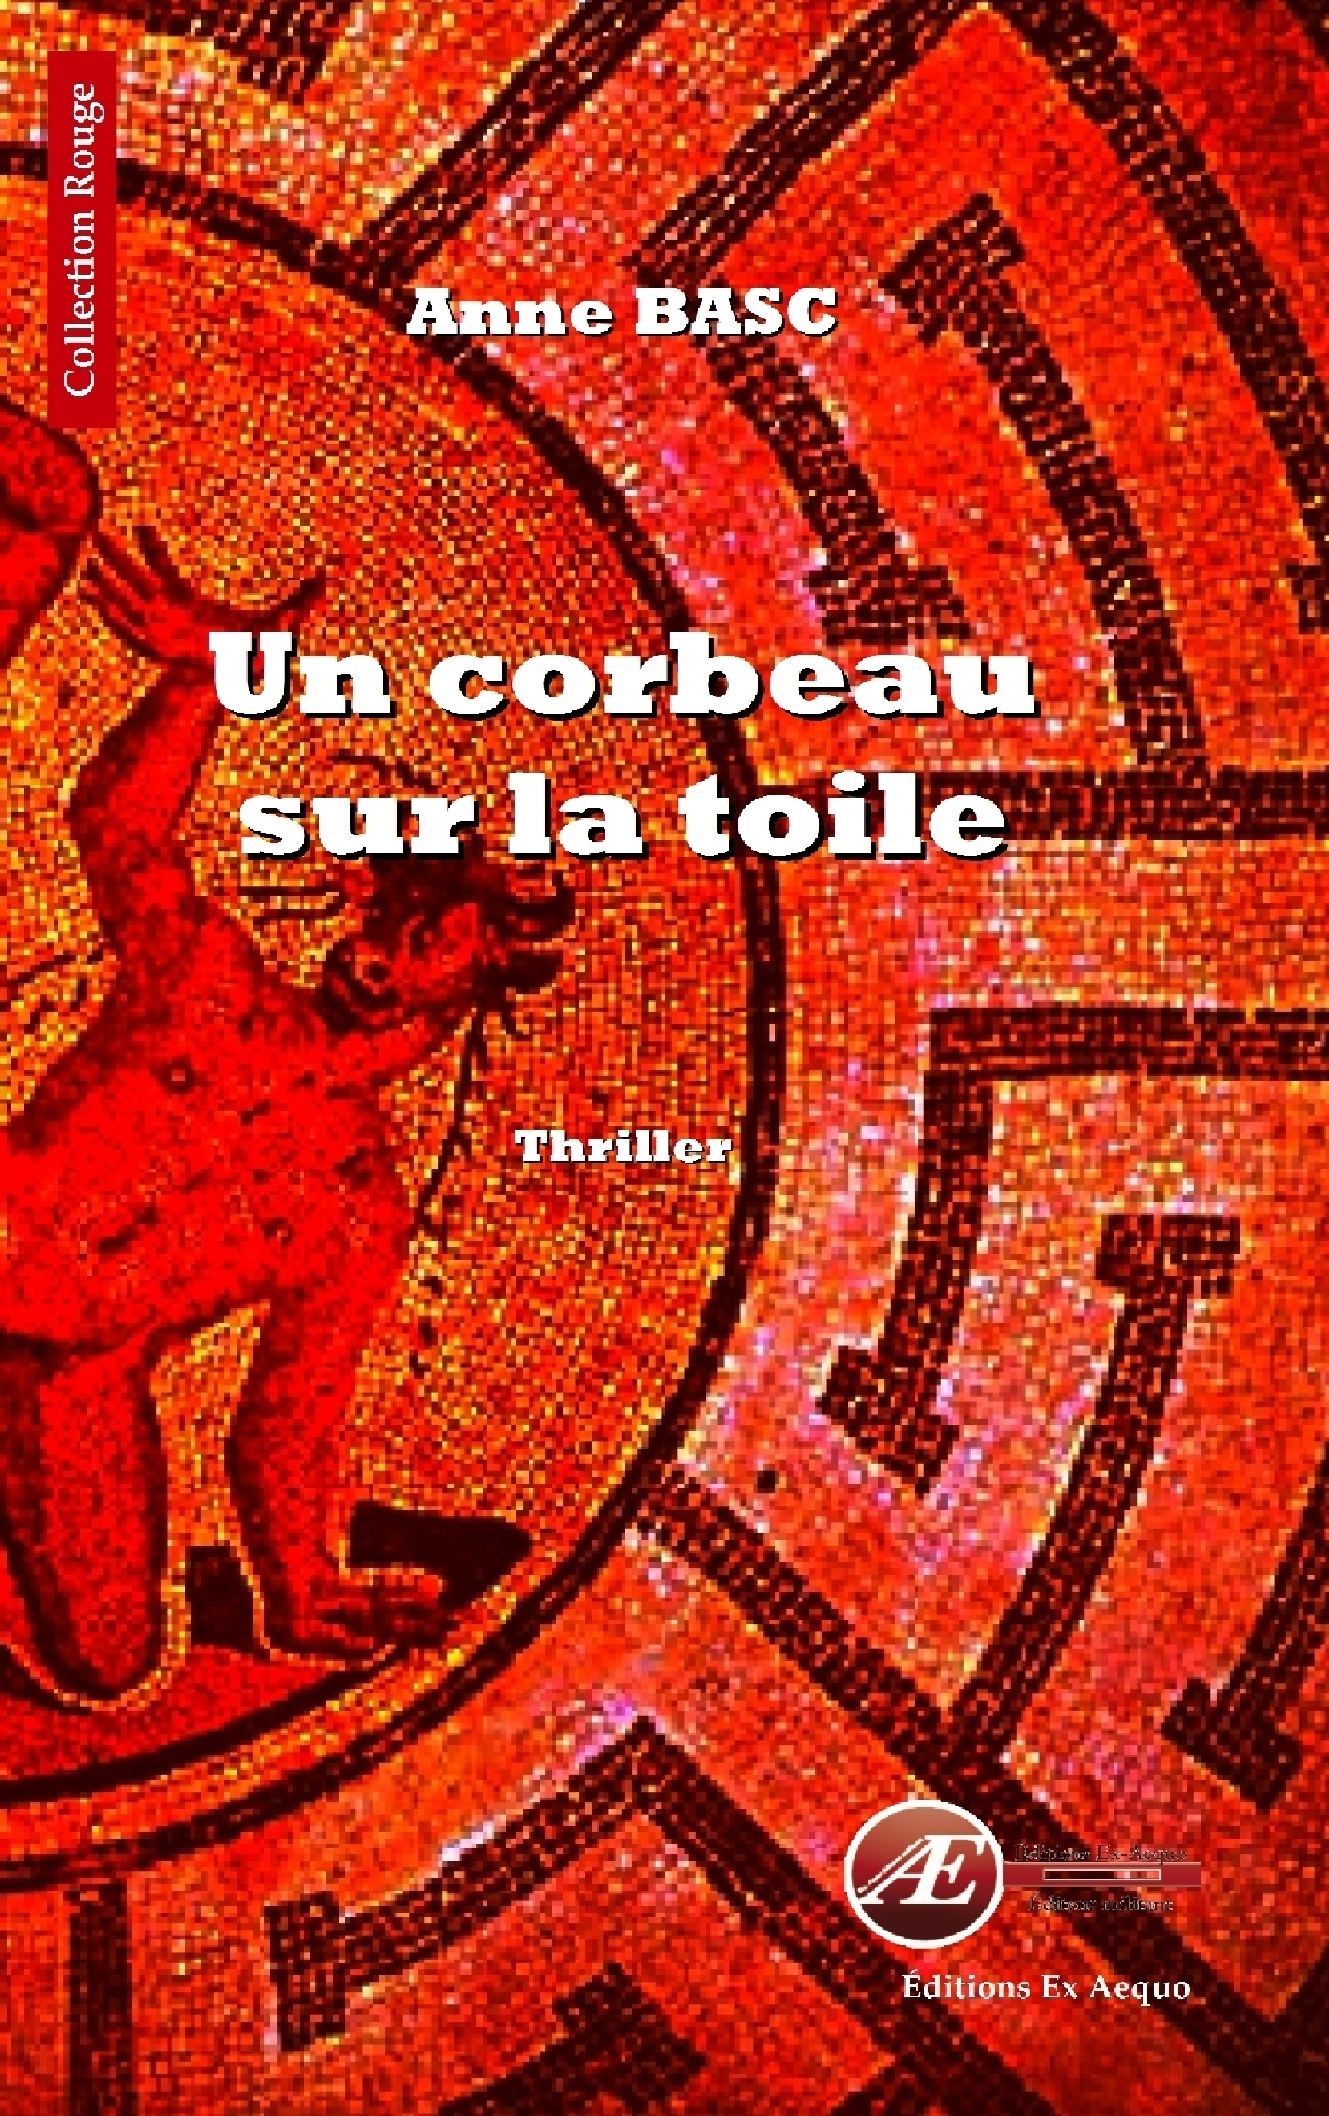 You are currently viewing Un corbeau sur la toile, d’Anne Basc